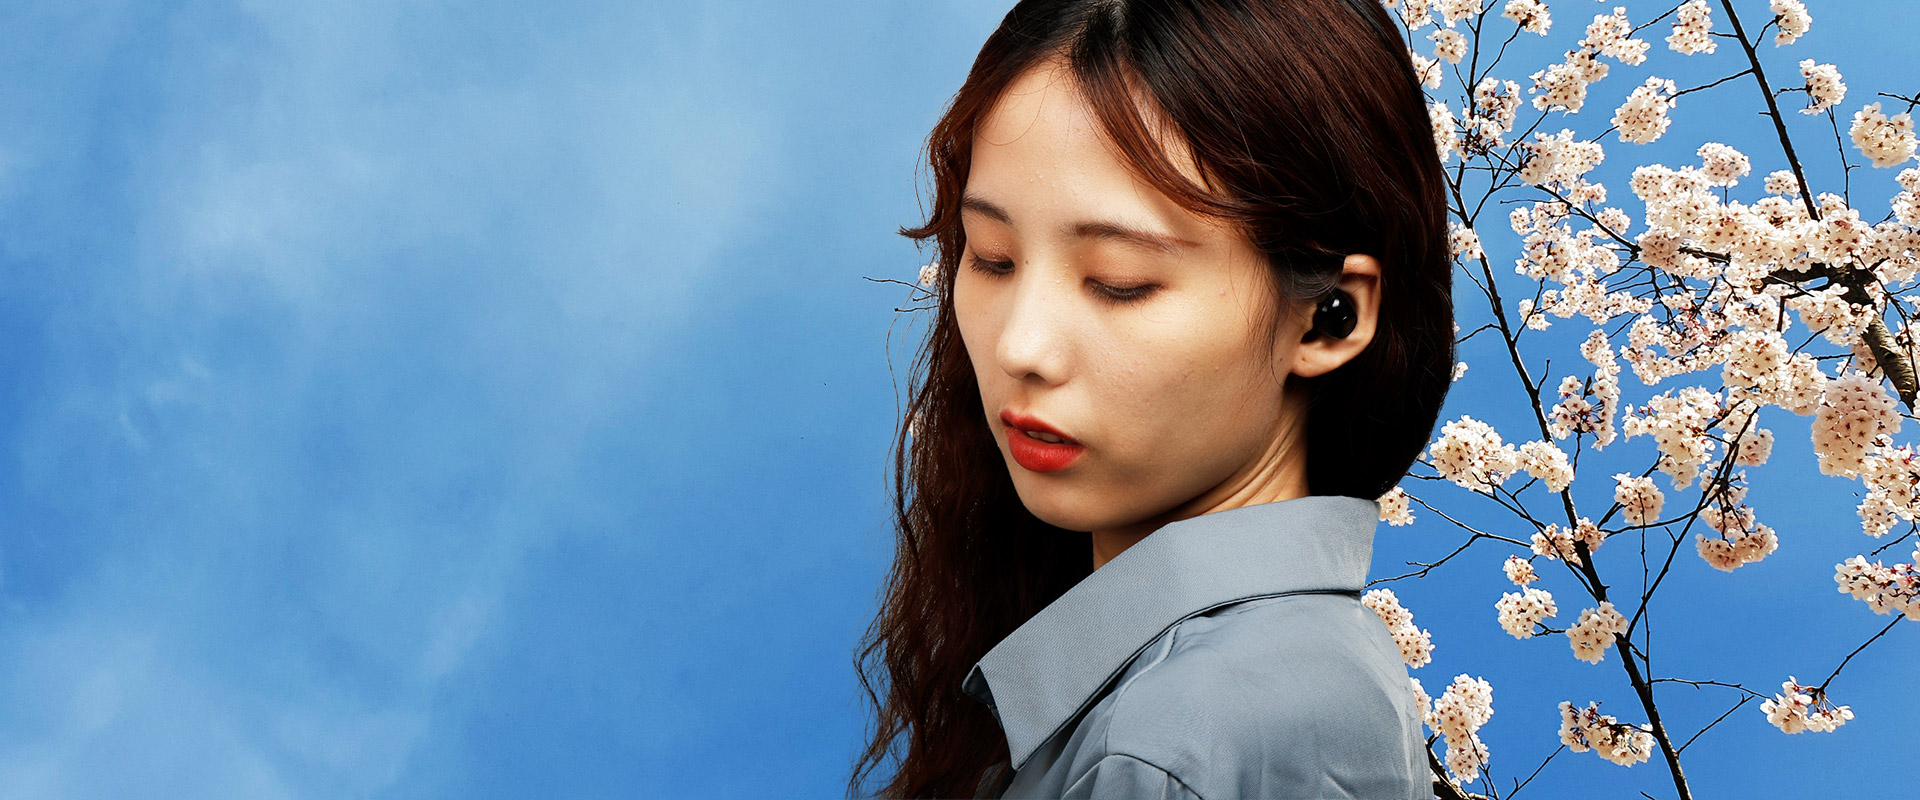 充電式集音器 Jinghao USB充電式イヤホン 耳穴式 左右両耳 軽量 コンパクト きれいでクリアな音 (ブラック)